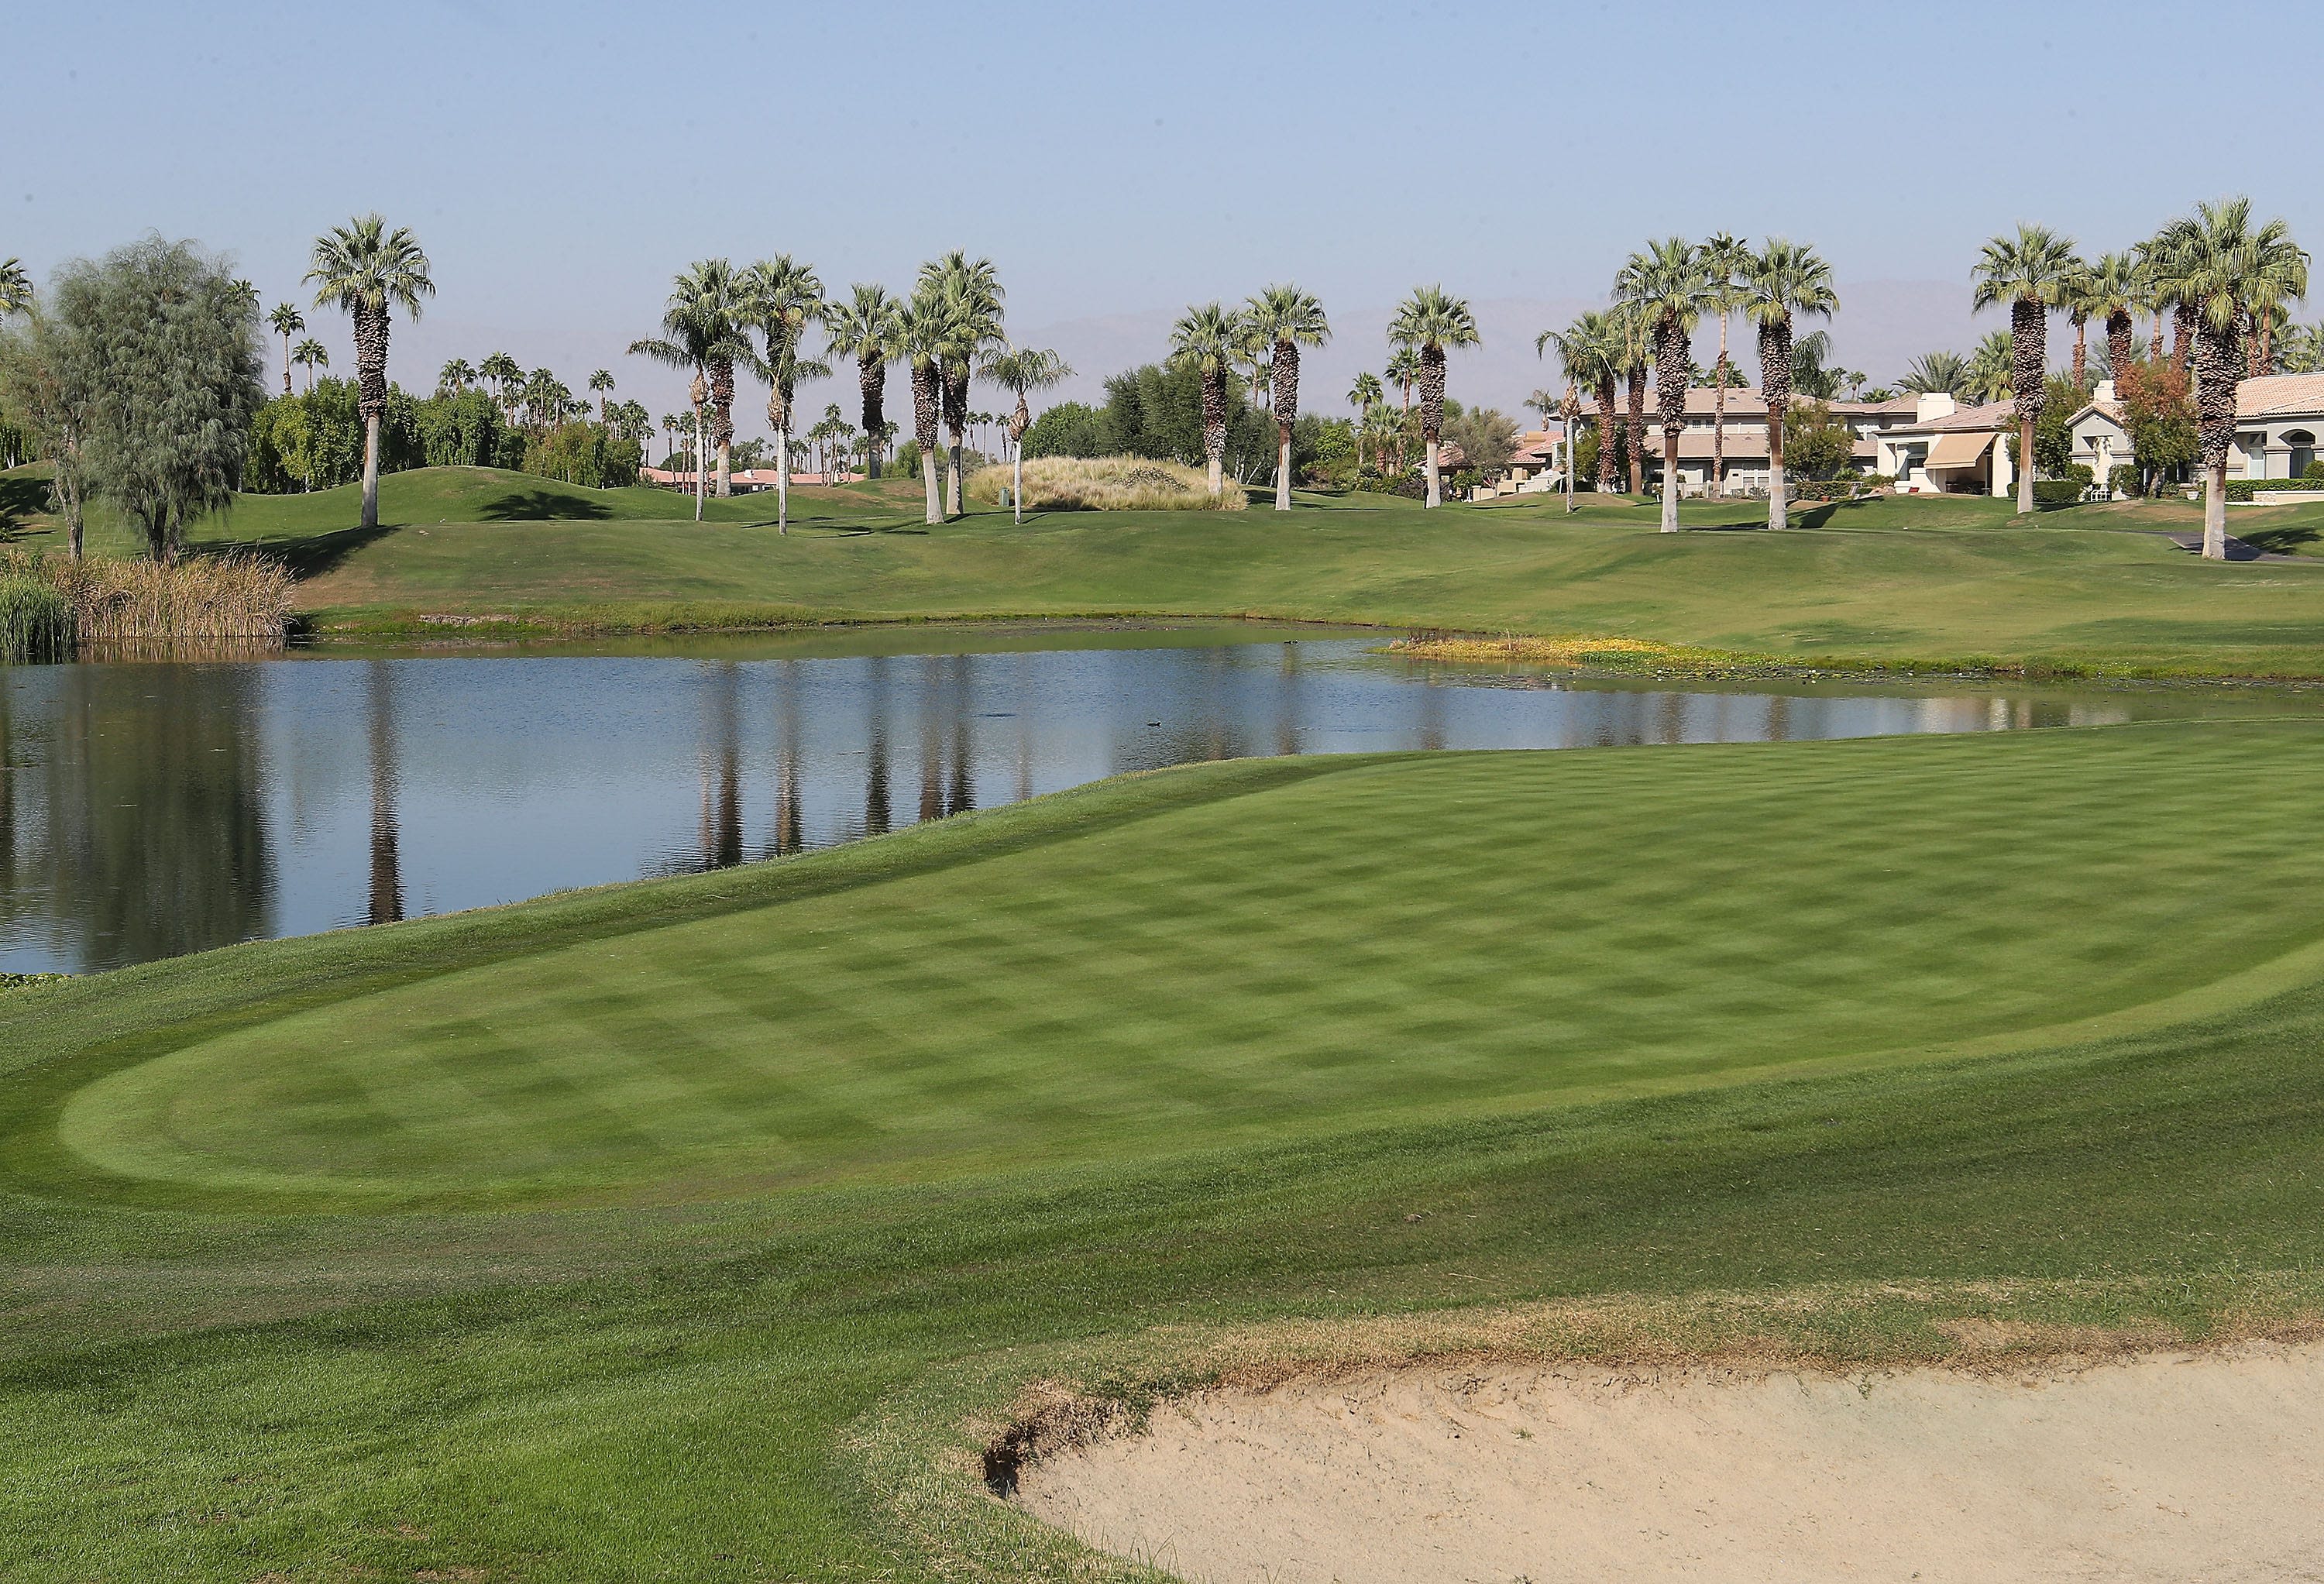 Where do Coachella Valley's public golf courses rank among California's top facilities?